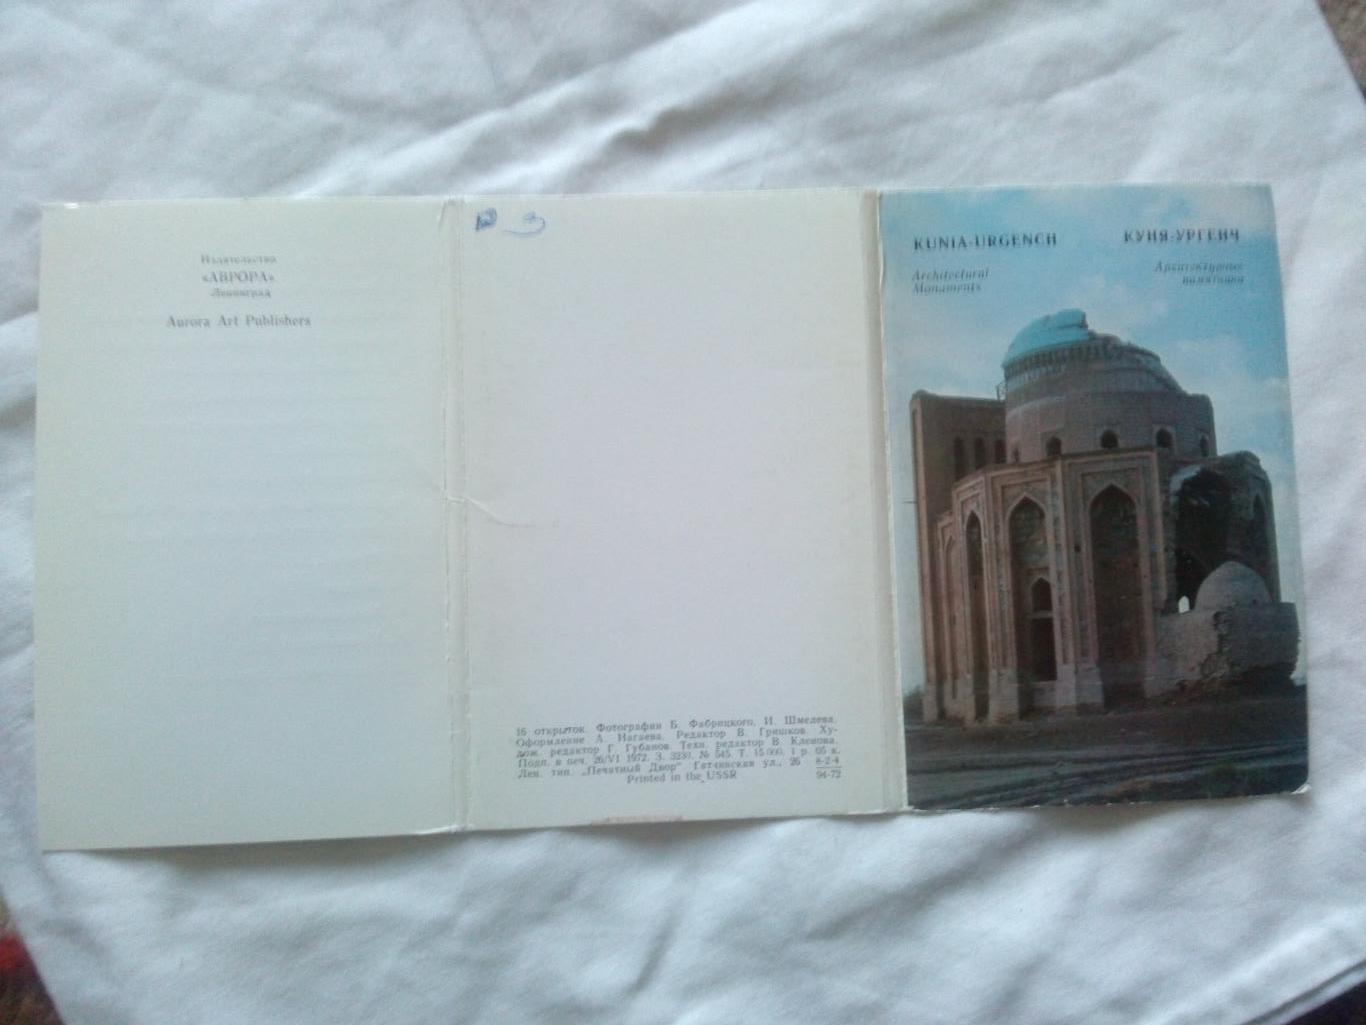 Памятные места СССР : Куня - Ургенч 1972 г. полный набор - 16 открыток (чистые) 1